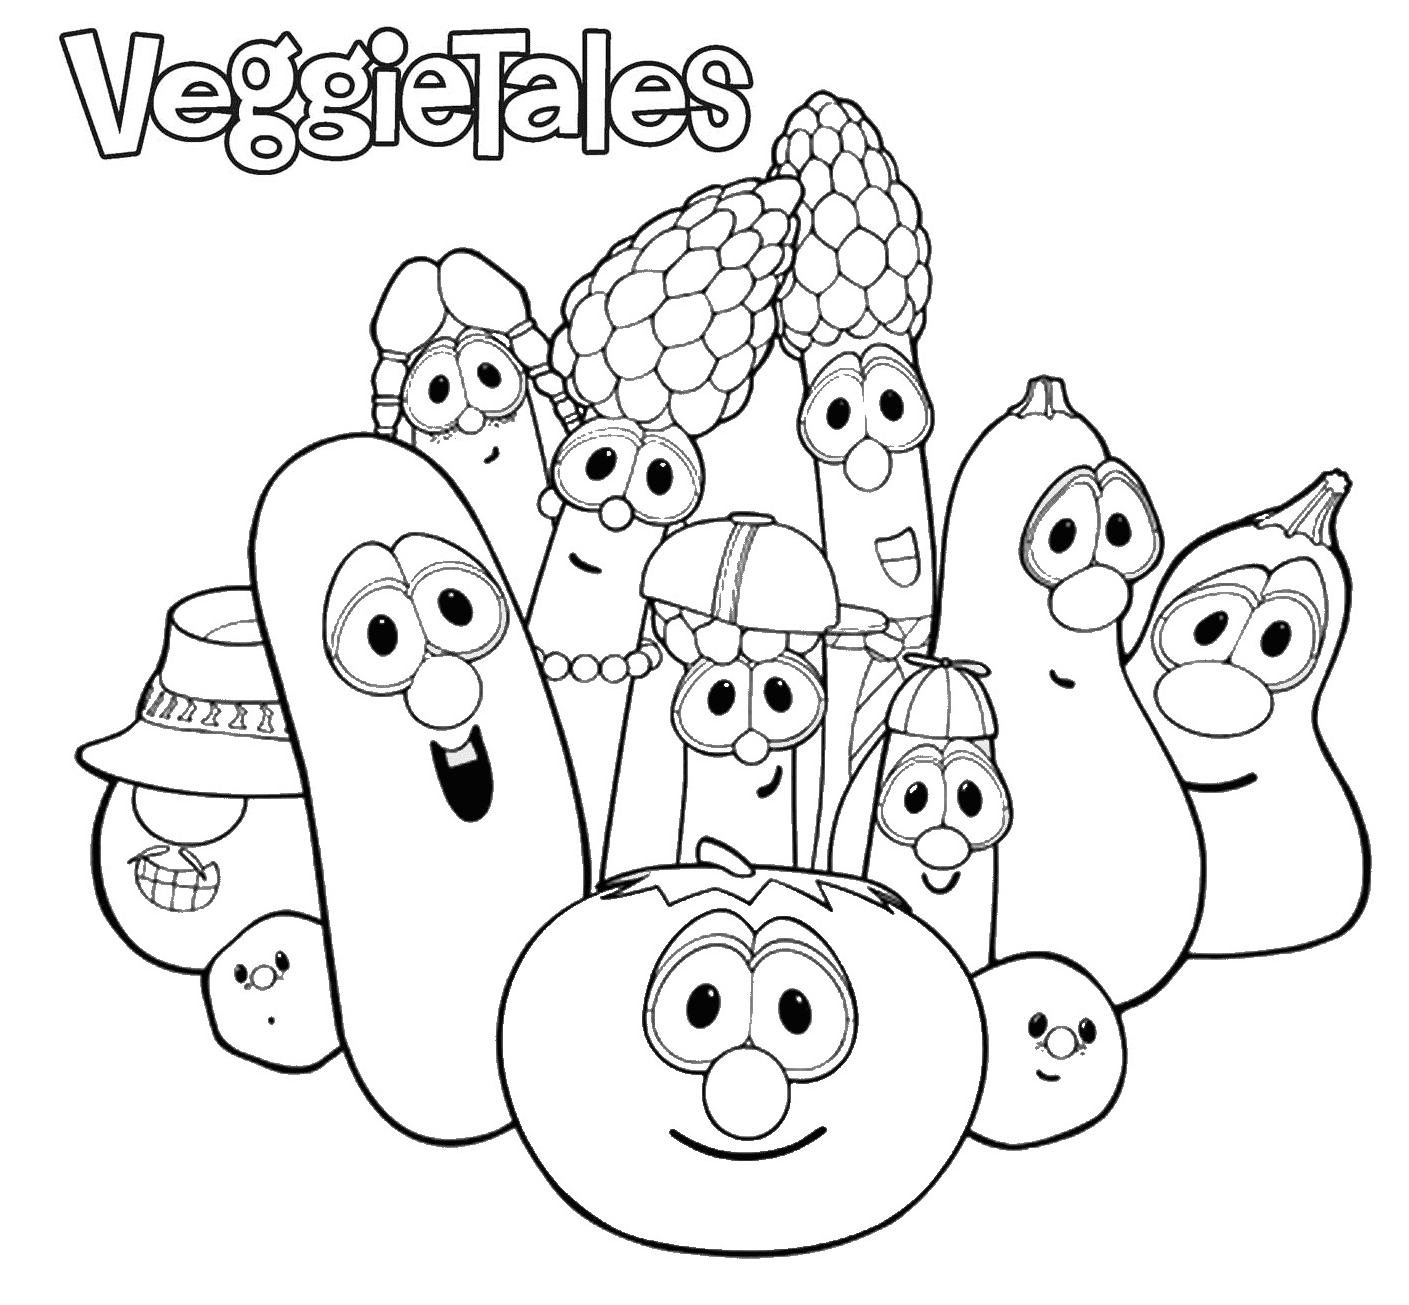 VeggieTales de VeggieTales